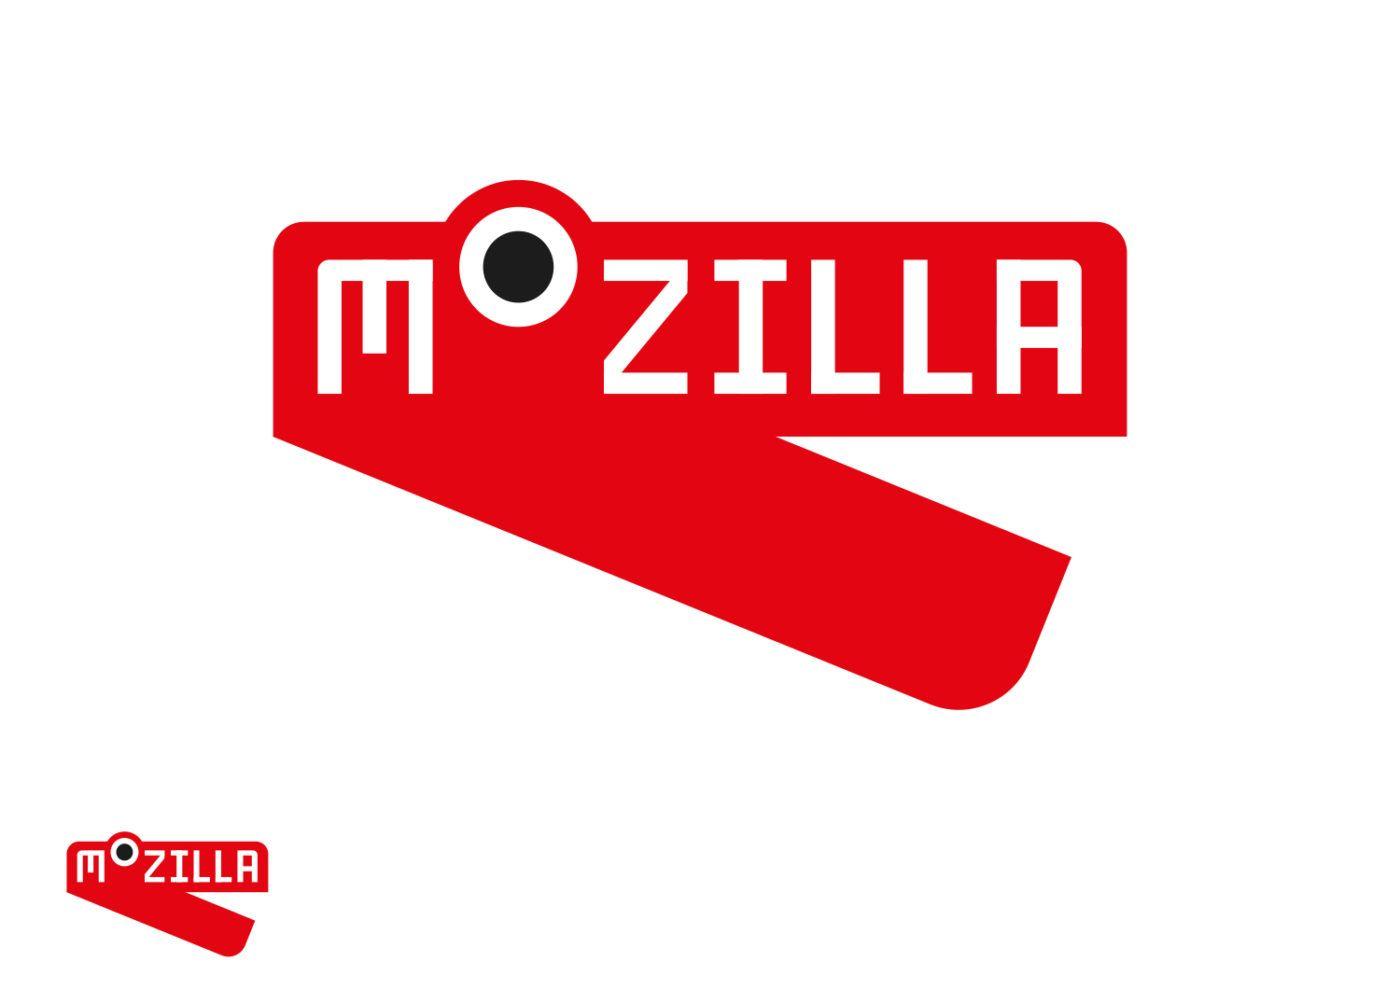 New Mozilla Logo - Mozilla's new logo hopes to show it's at “the heart of the internet ...